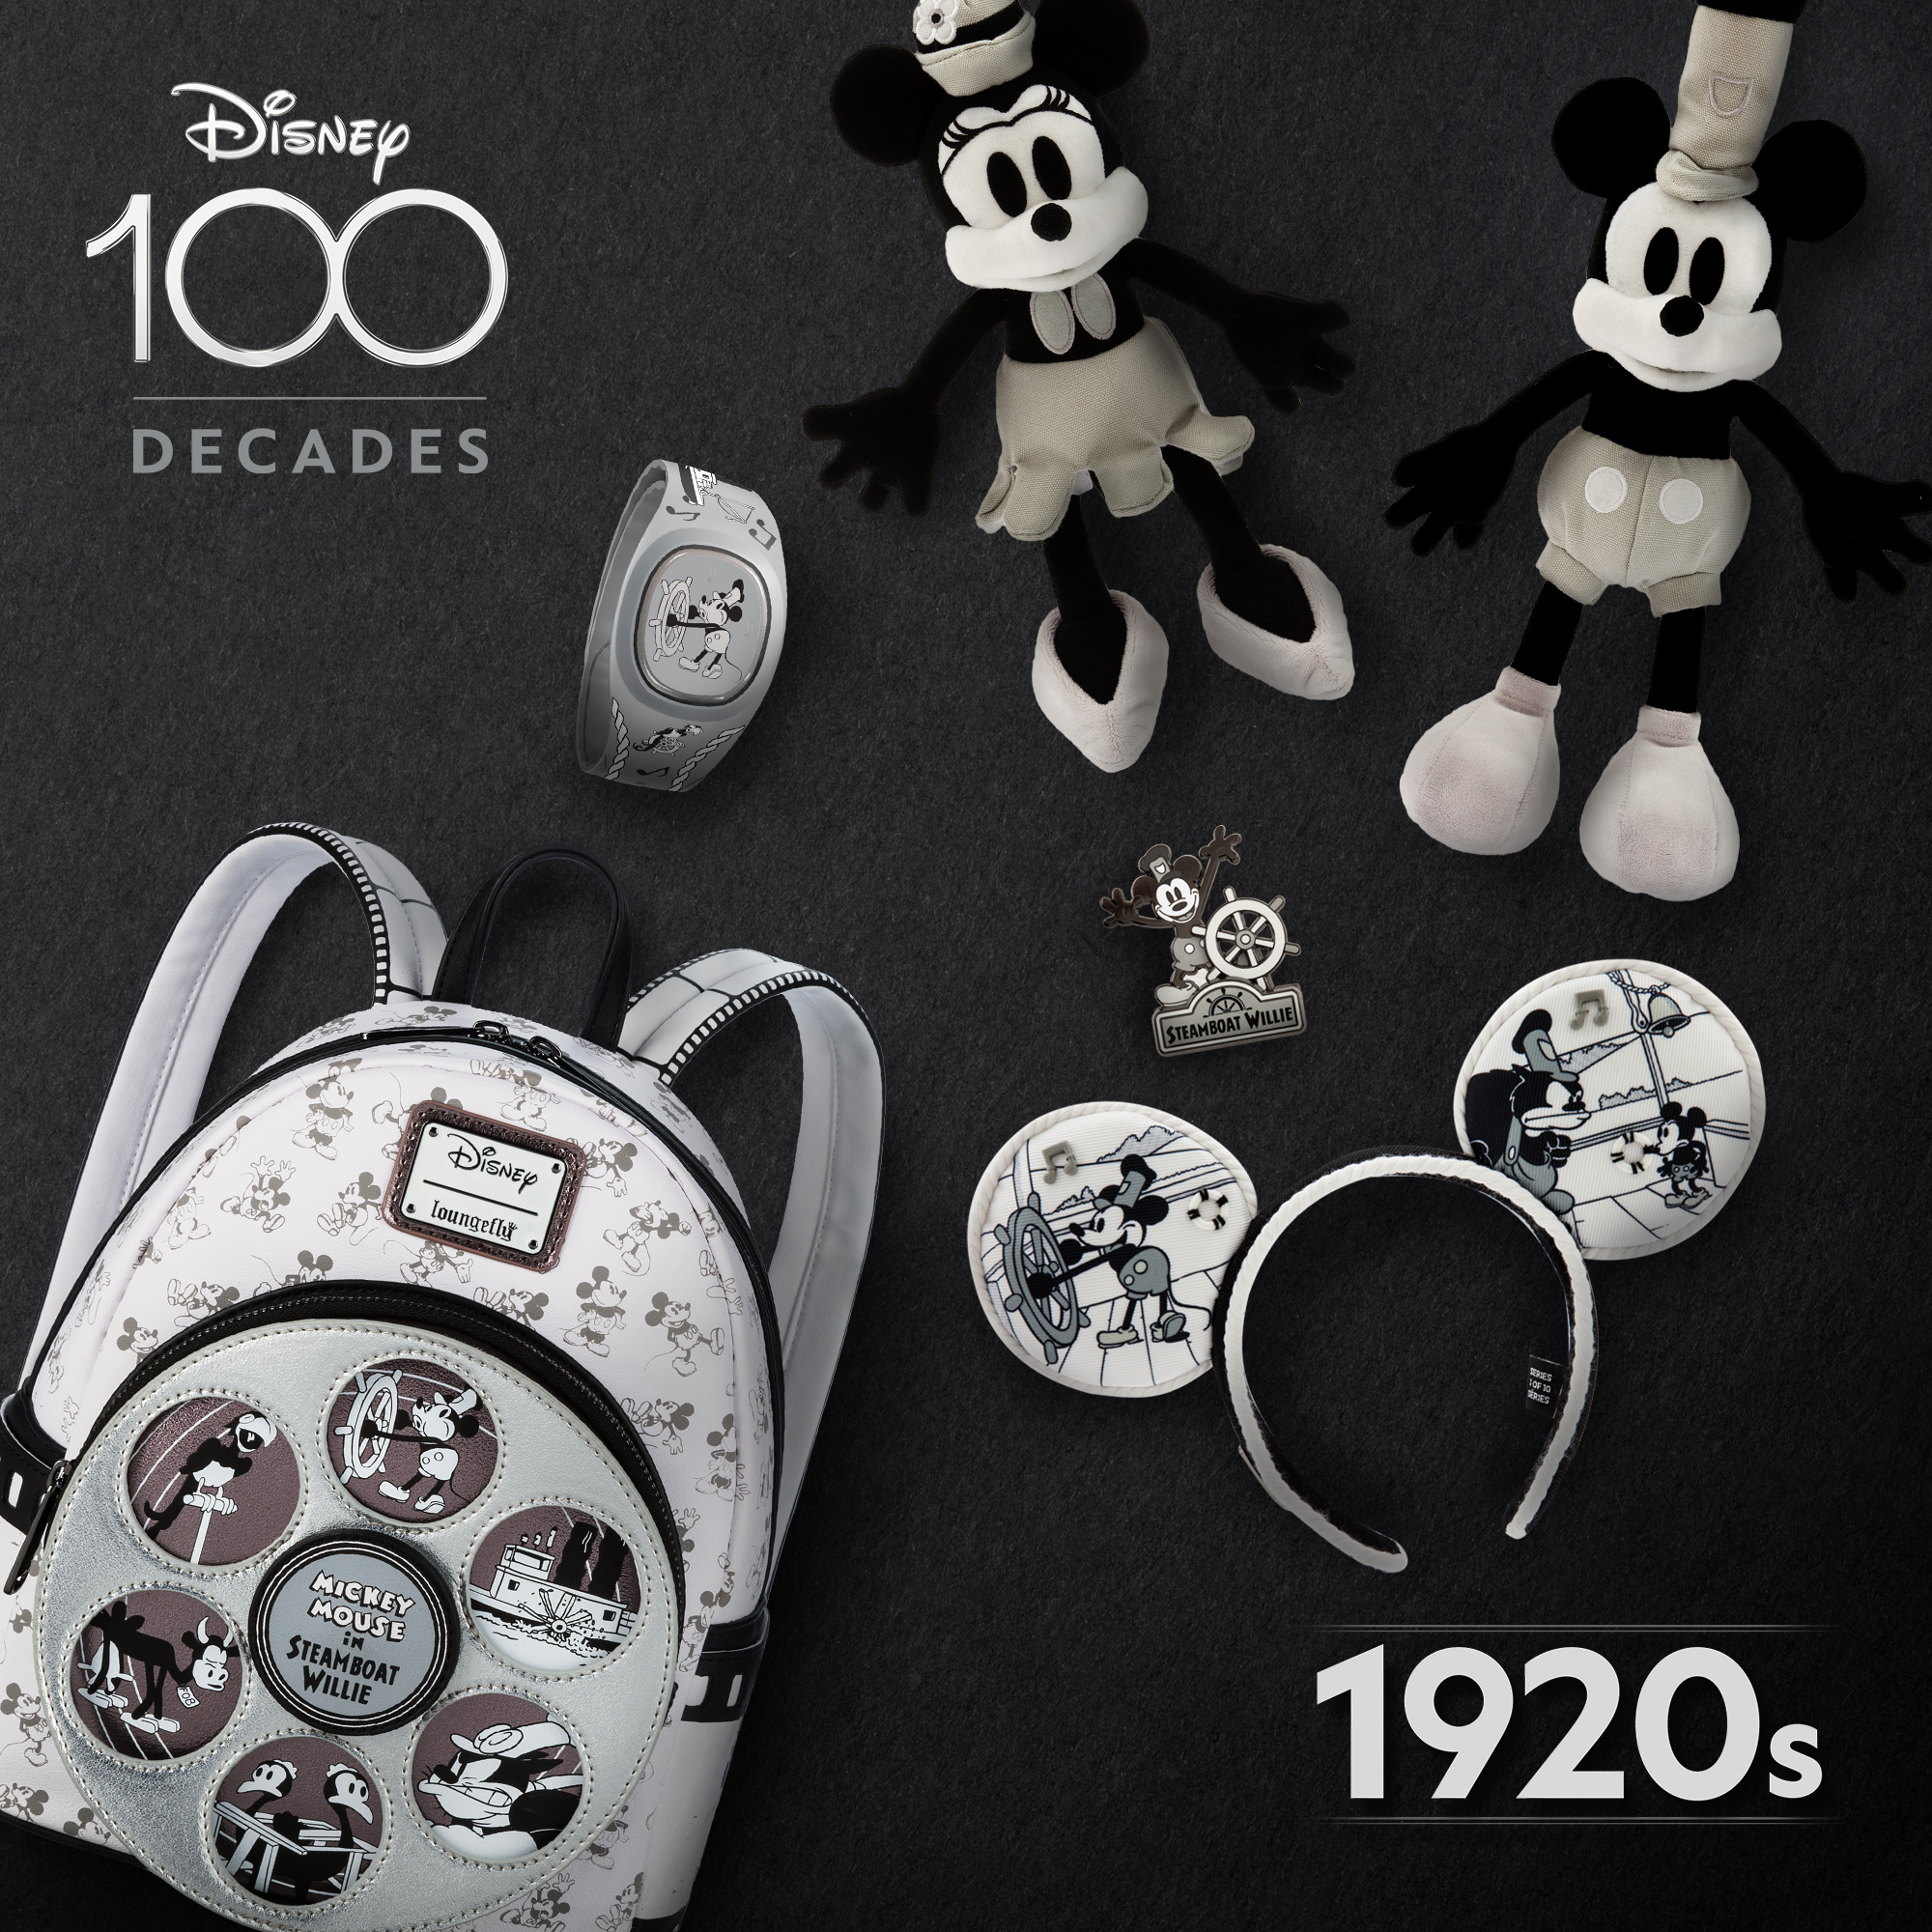 Nova Coleção Celebra Cada Década dos 100 Anos da Disney